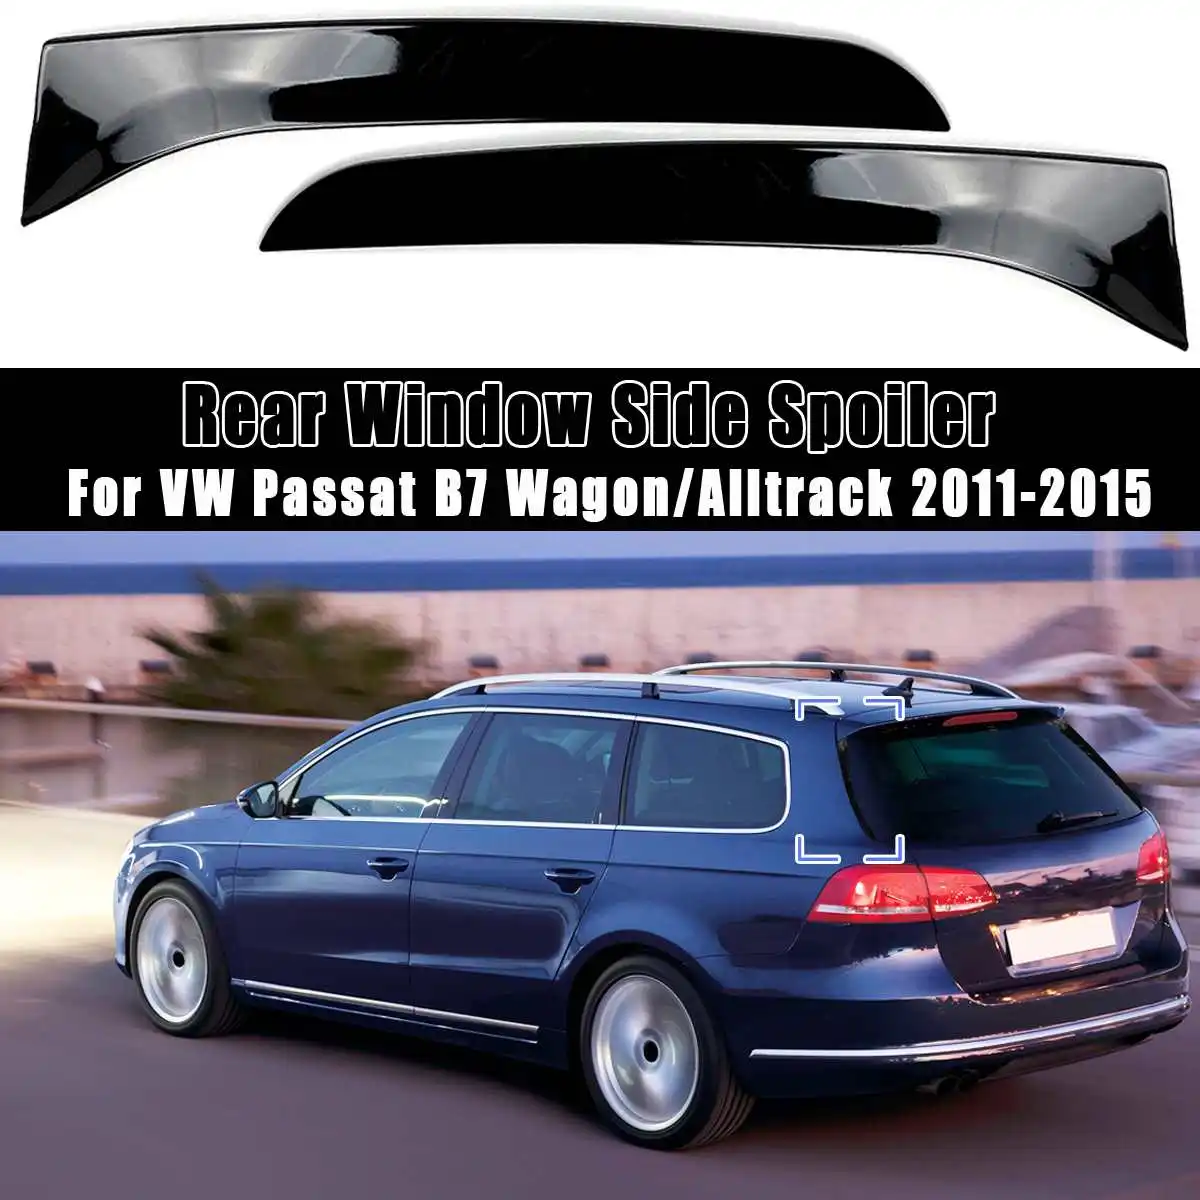 

Rear Window Side Spoiler Spoiler Canard Canards Splitter For VW for Passat B7 Wagon/Alltrack 2011 2012 2013 2014 2015